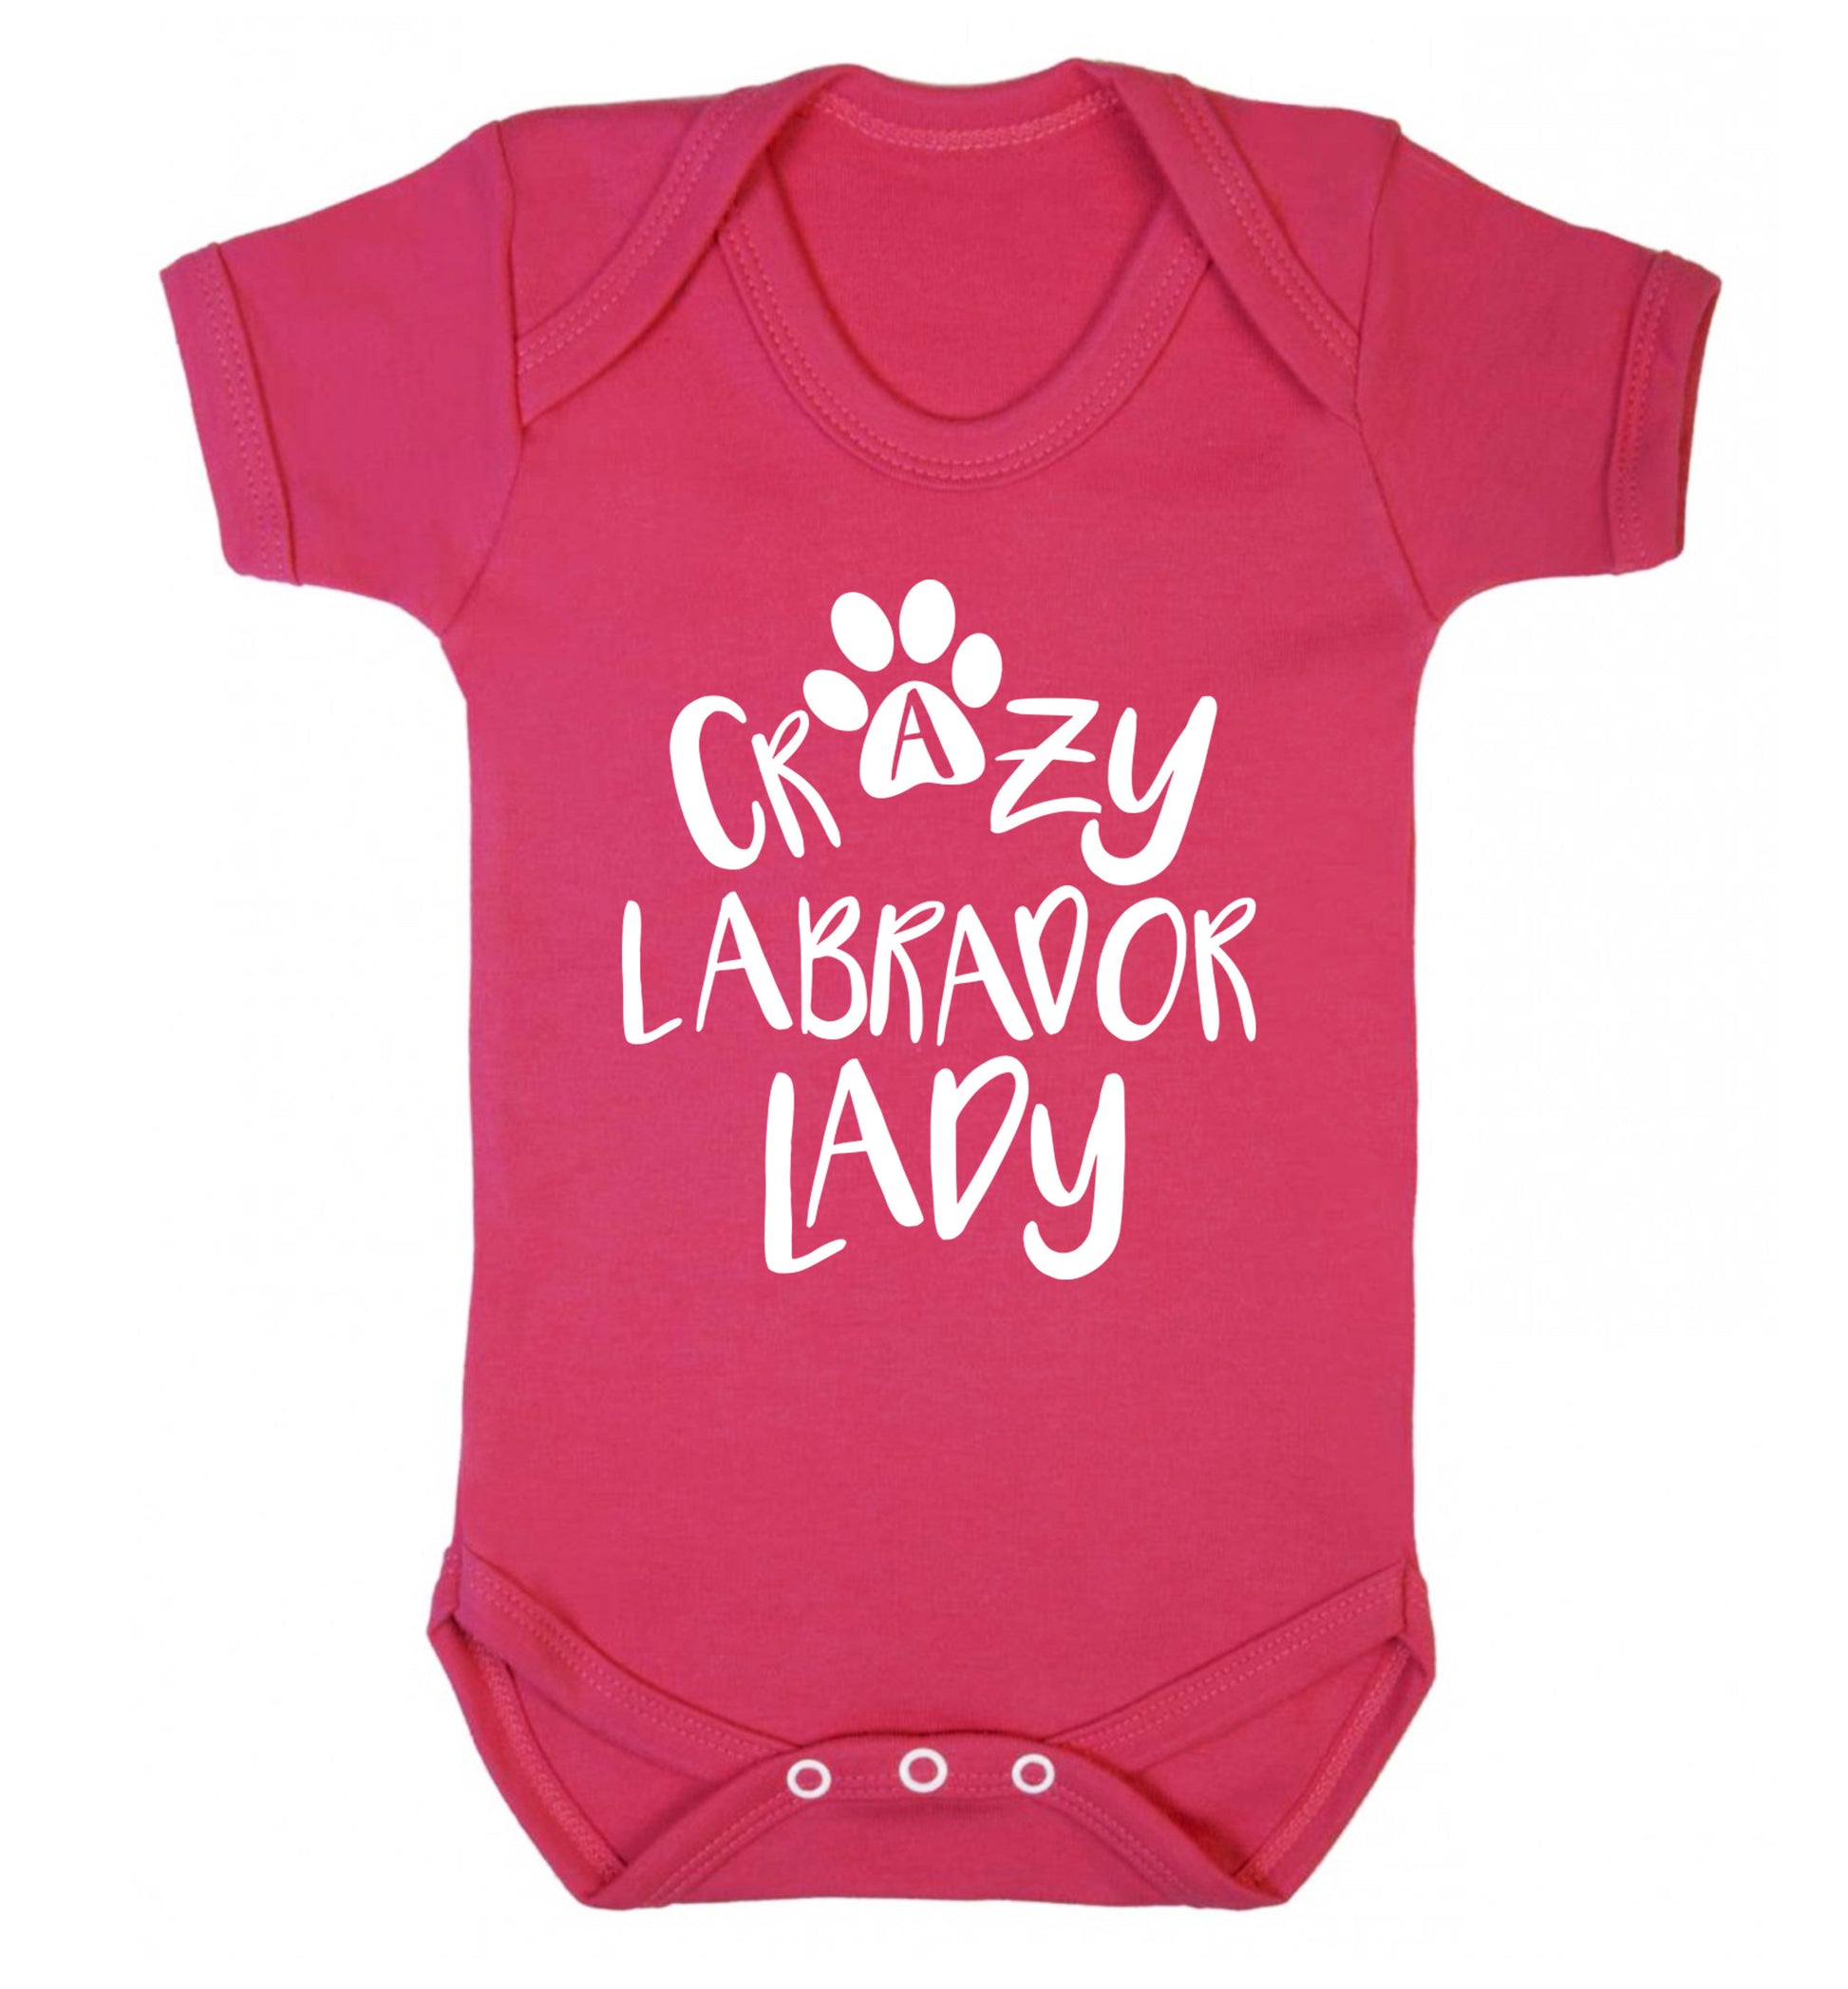 Crazy labrador lady Baby Vest dark pink 18-24 months